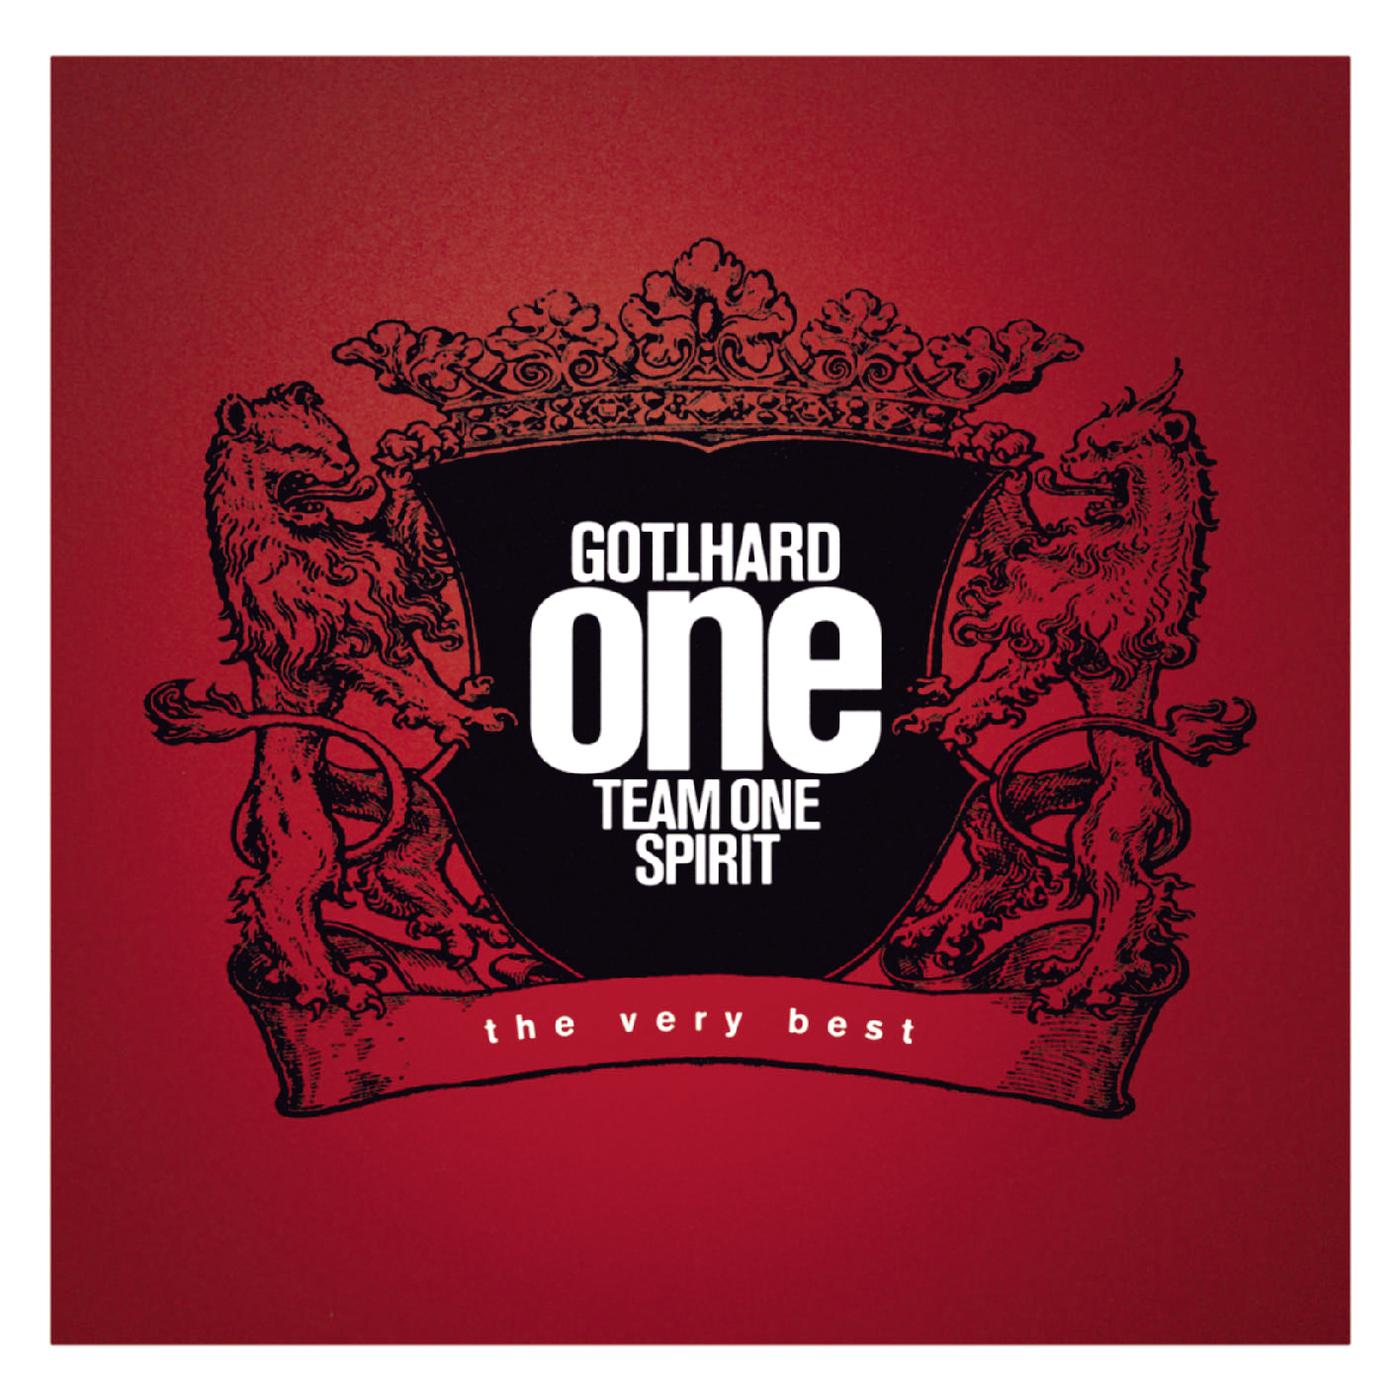 Make My Day歌词 歌手Gotthard-专辑One Team One Spirit-单曲《Make My Day》LRC歌词下载